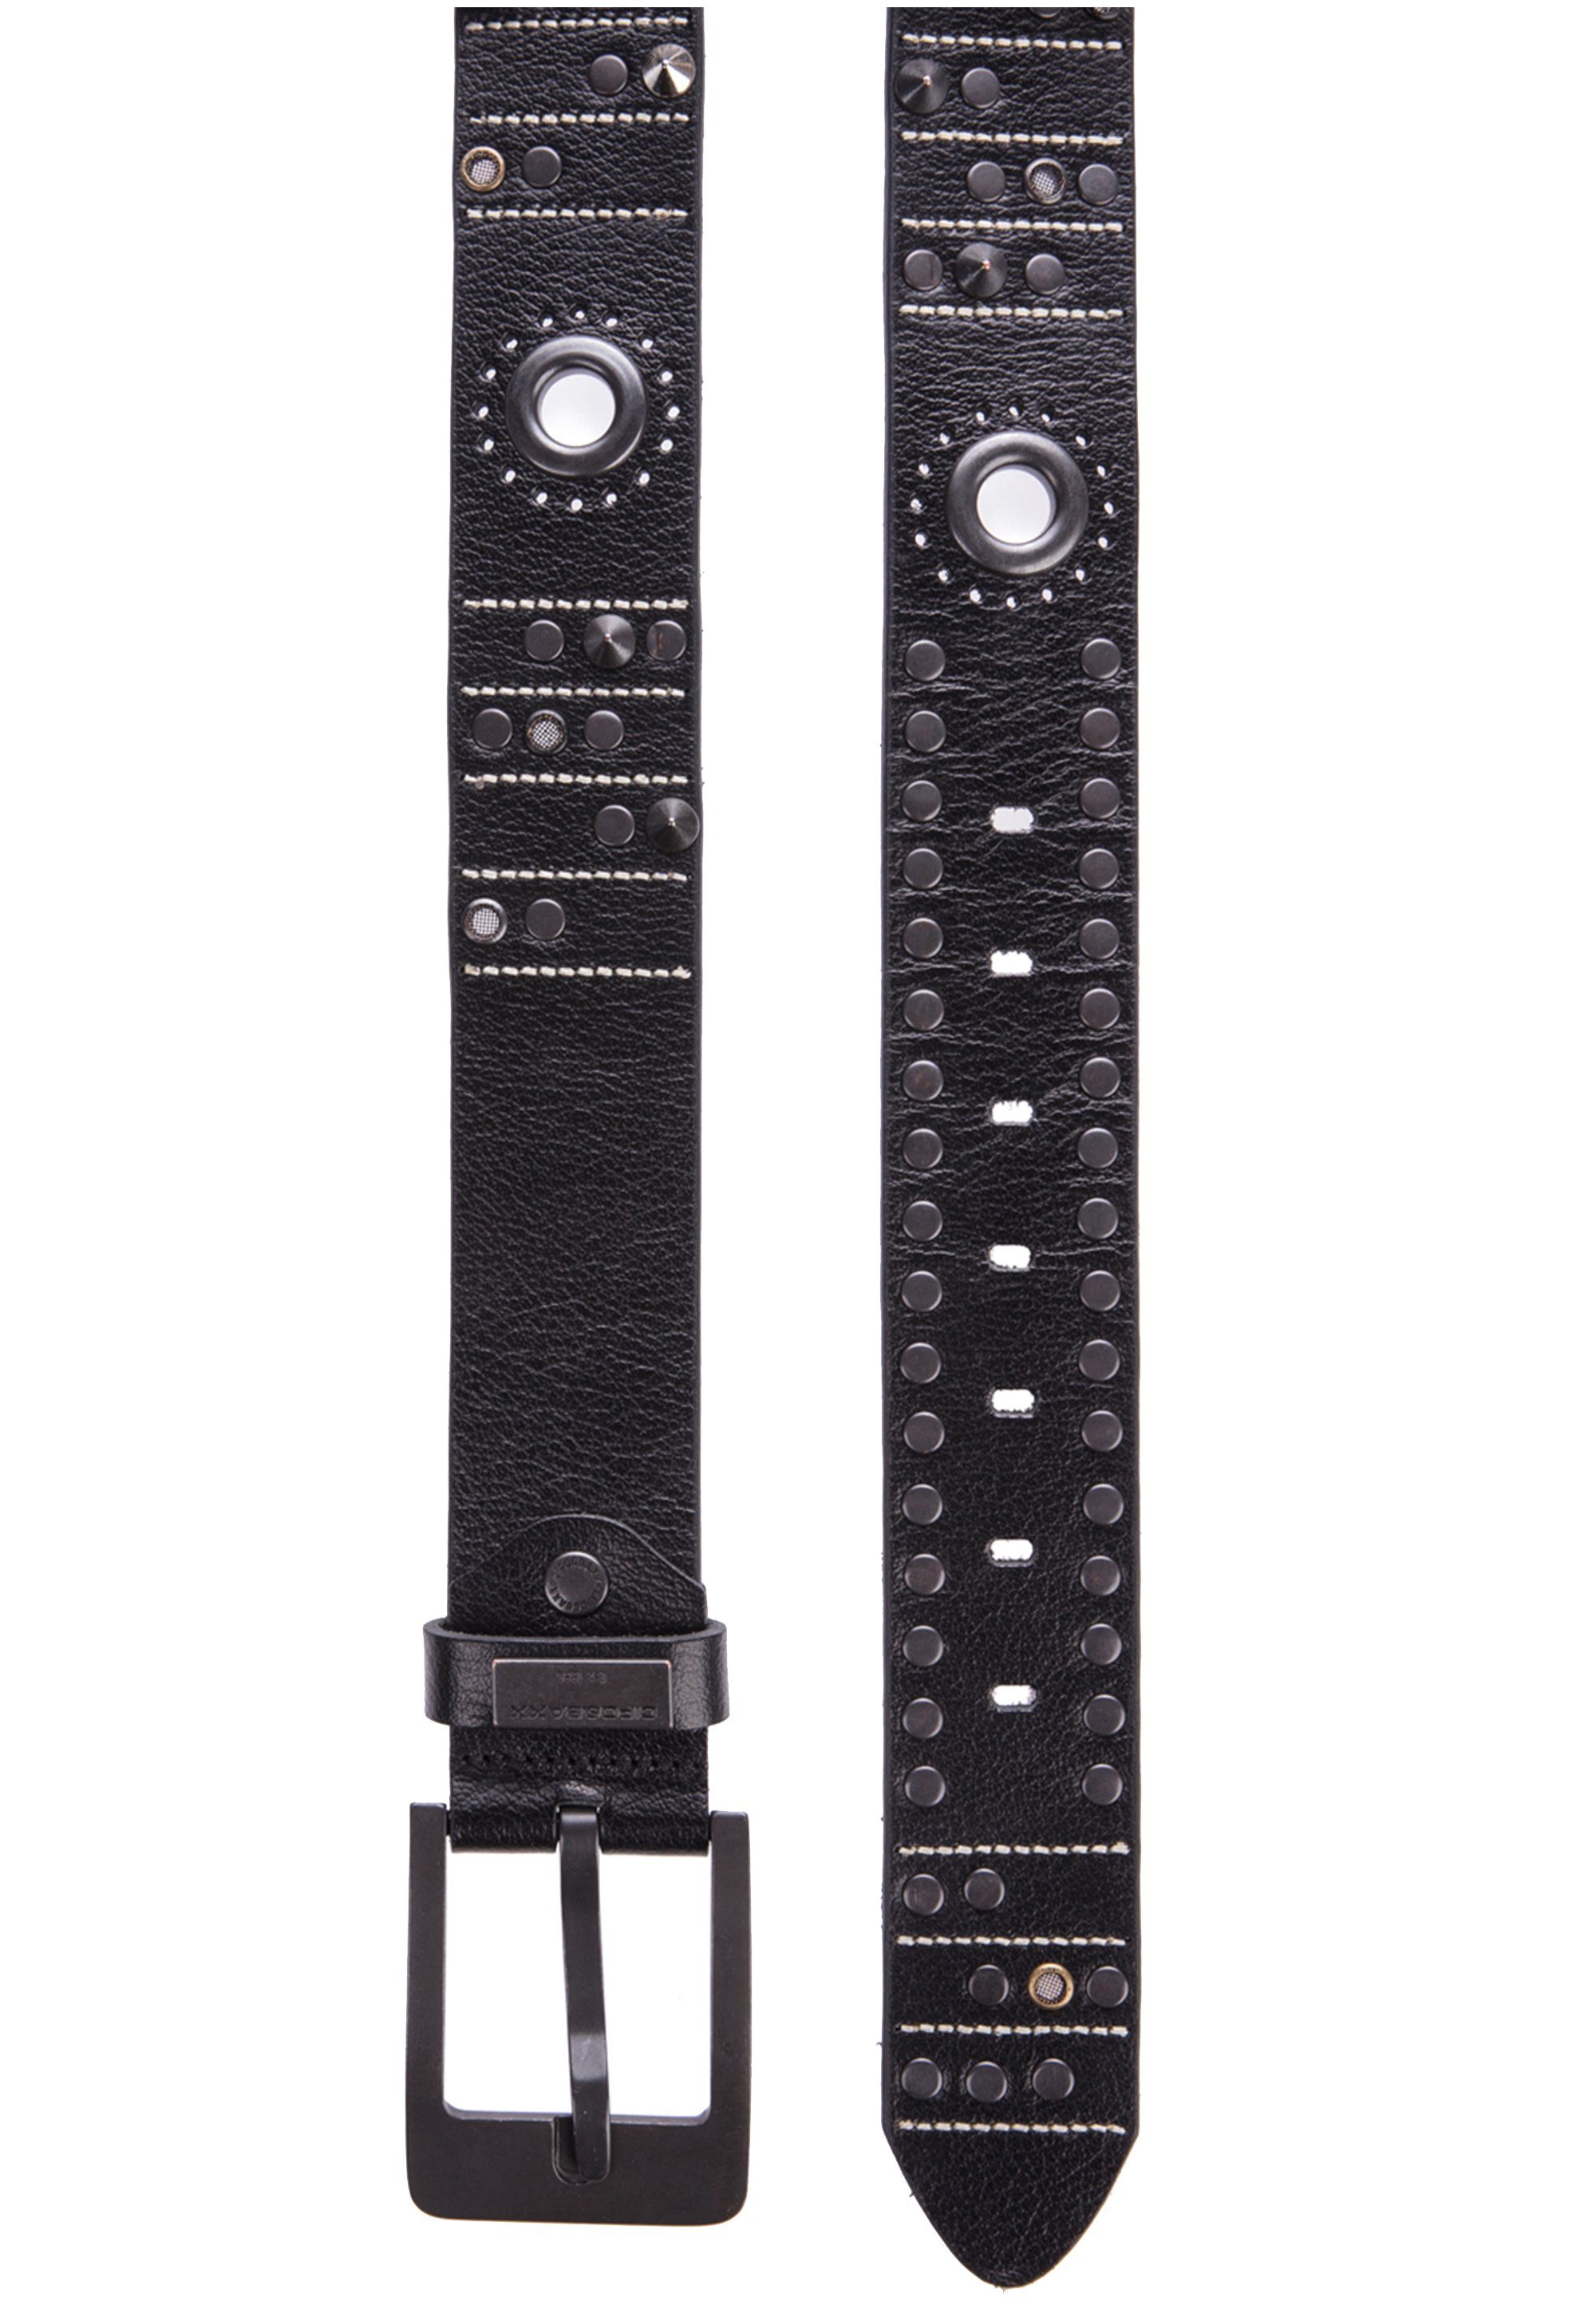 & schwarz Baxx CG162 Ledergürtel Cipo mit stylischen Nietenapplikationen